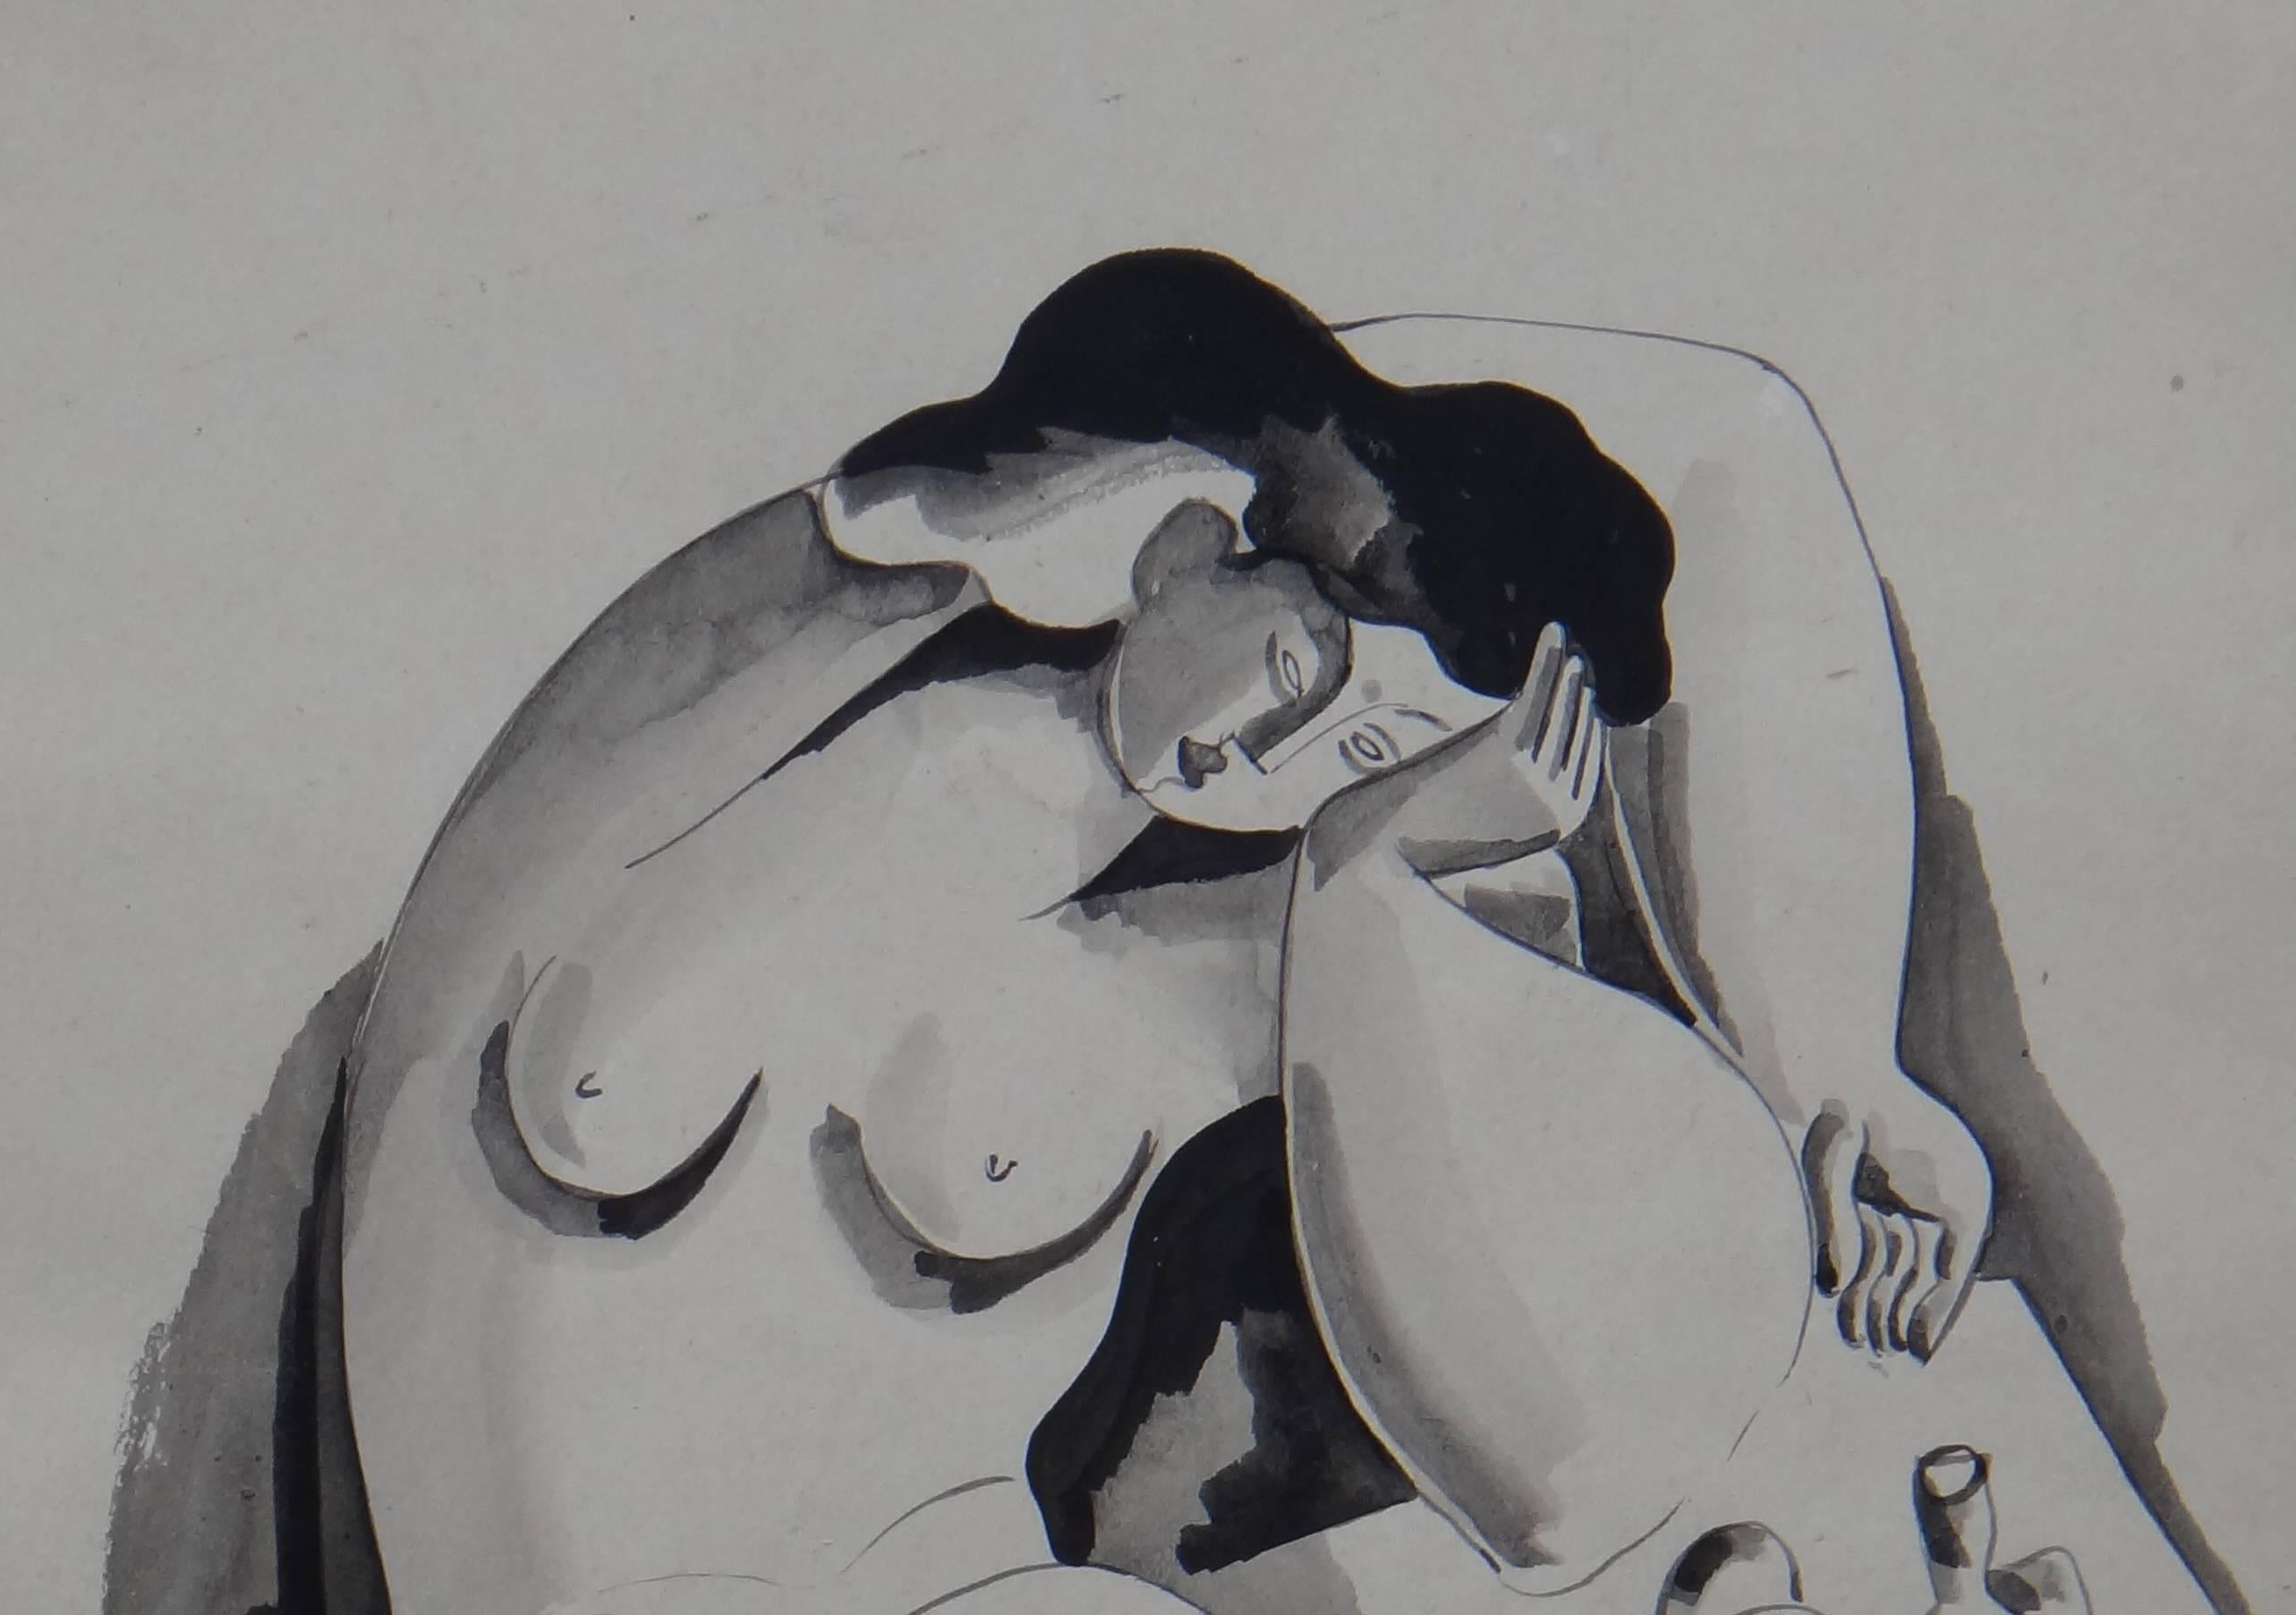 Bla Kdr « Weiblicher Akt » ( Nus féminins ), encre sur papier, années 1920 - Art de Bela Kadar